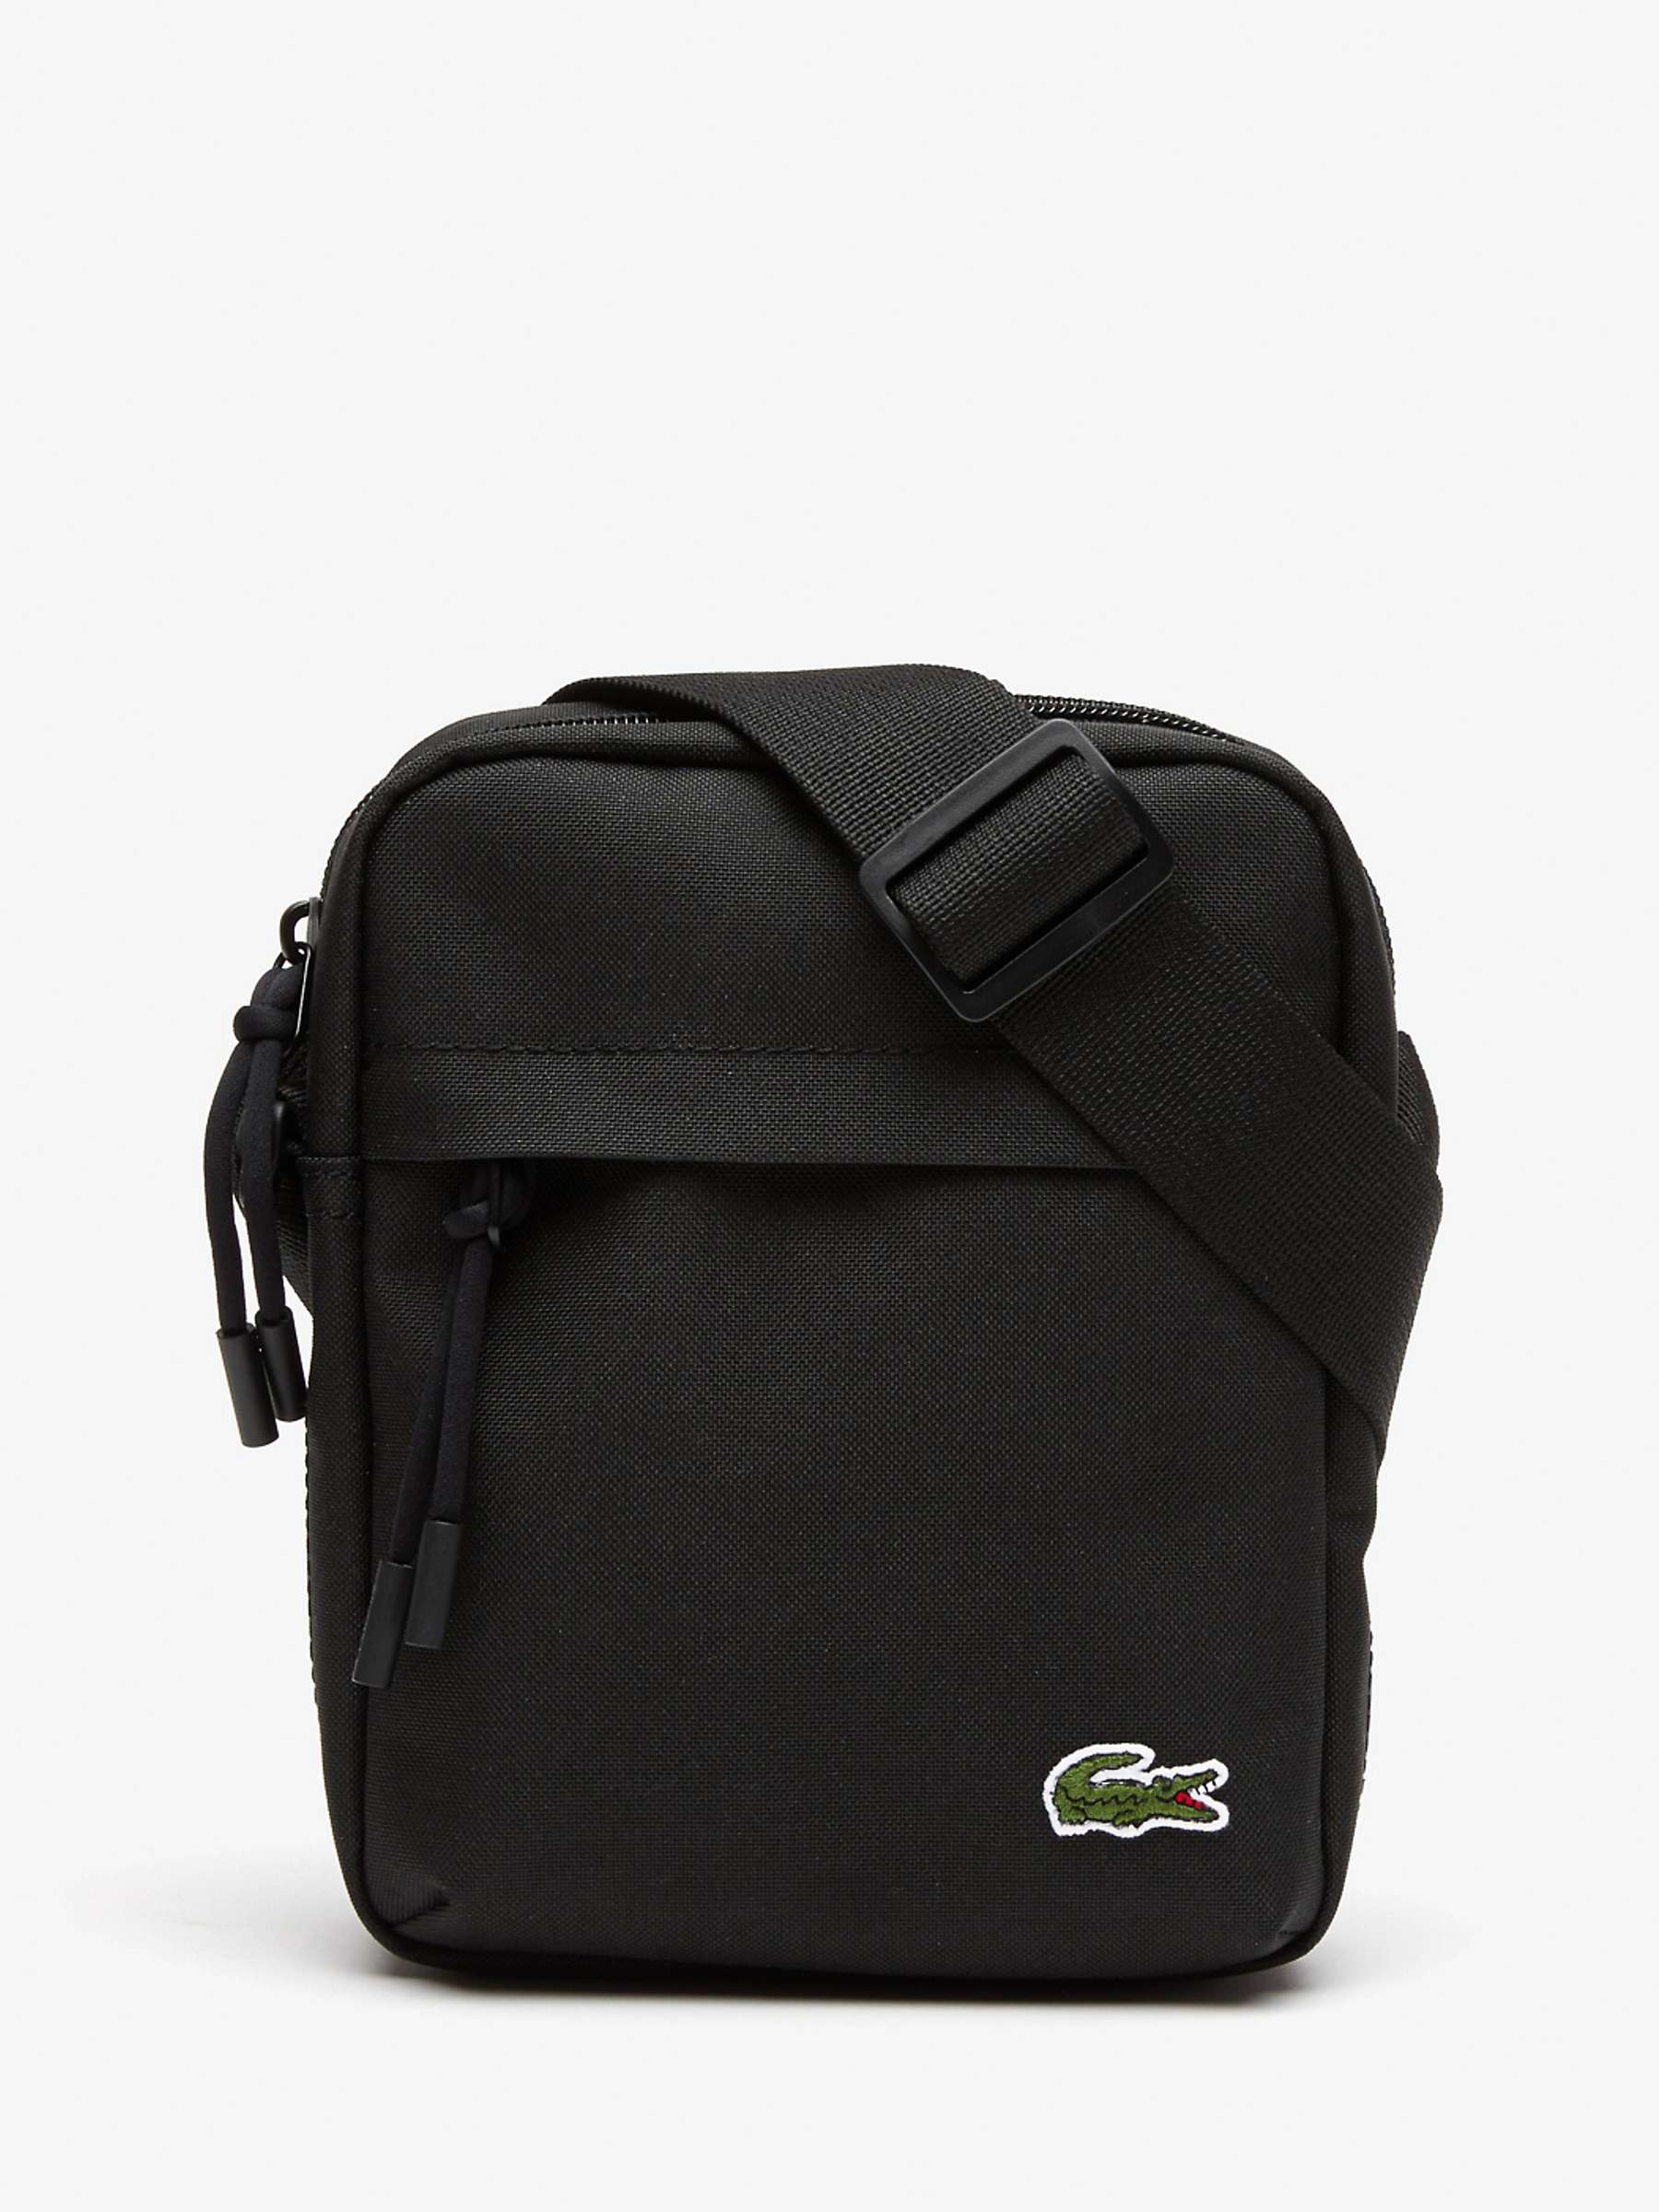 Buy Lacoste Zip Cross Body Bag Online at johnlewis.com